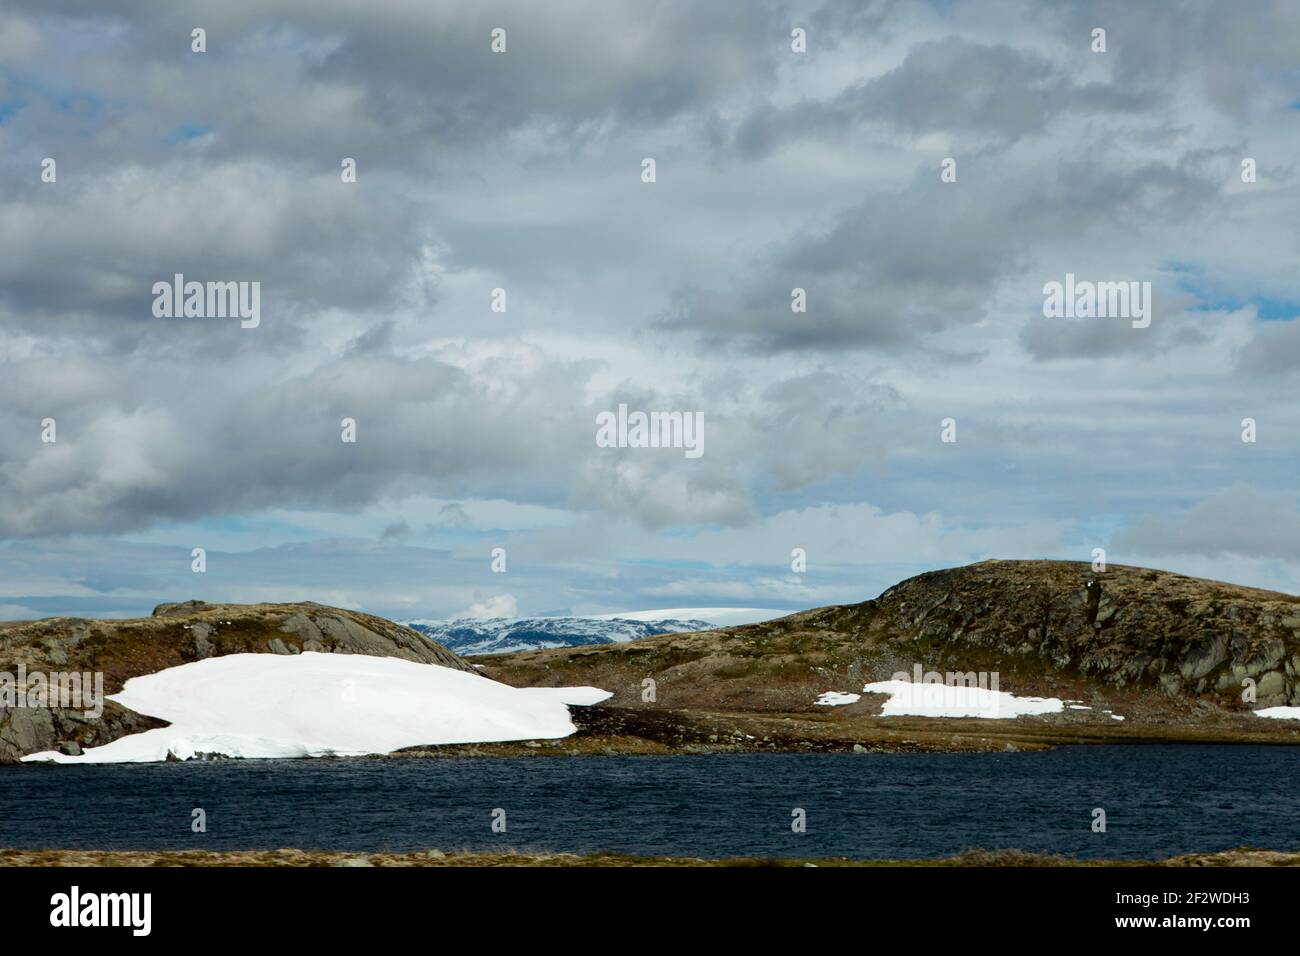 Neve fusa e lago tra le scogliere con neve estiva In cima alla Stordalsnippa, vicino a Roeldal in Norvegia Foto Stock